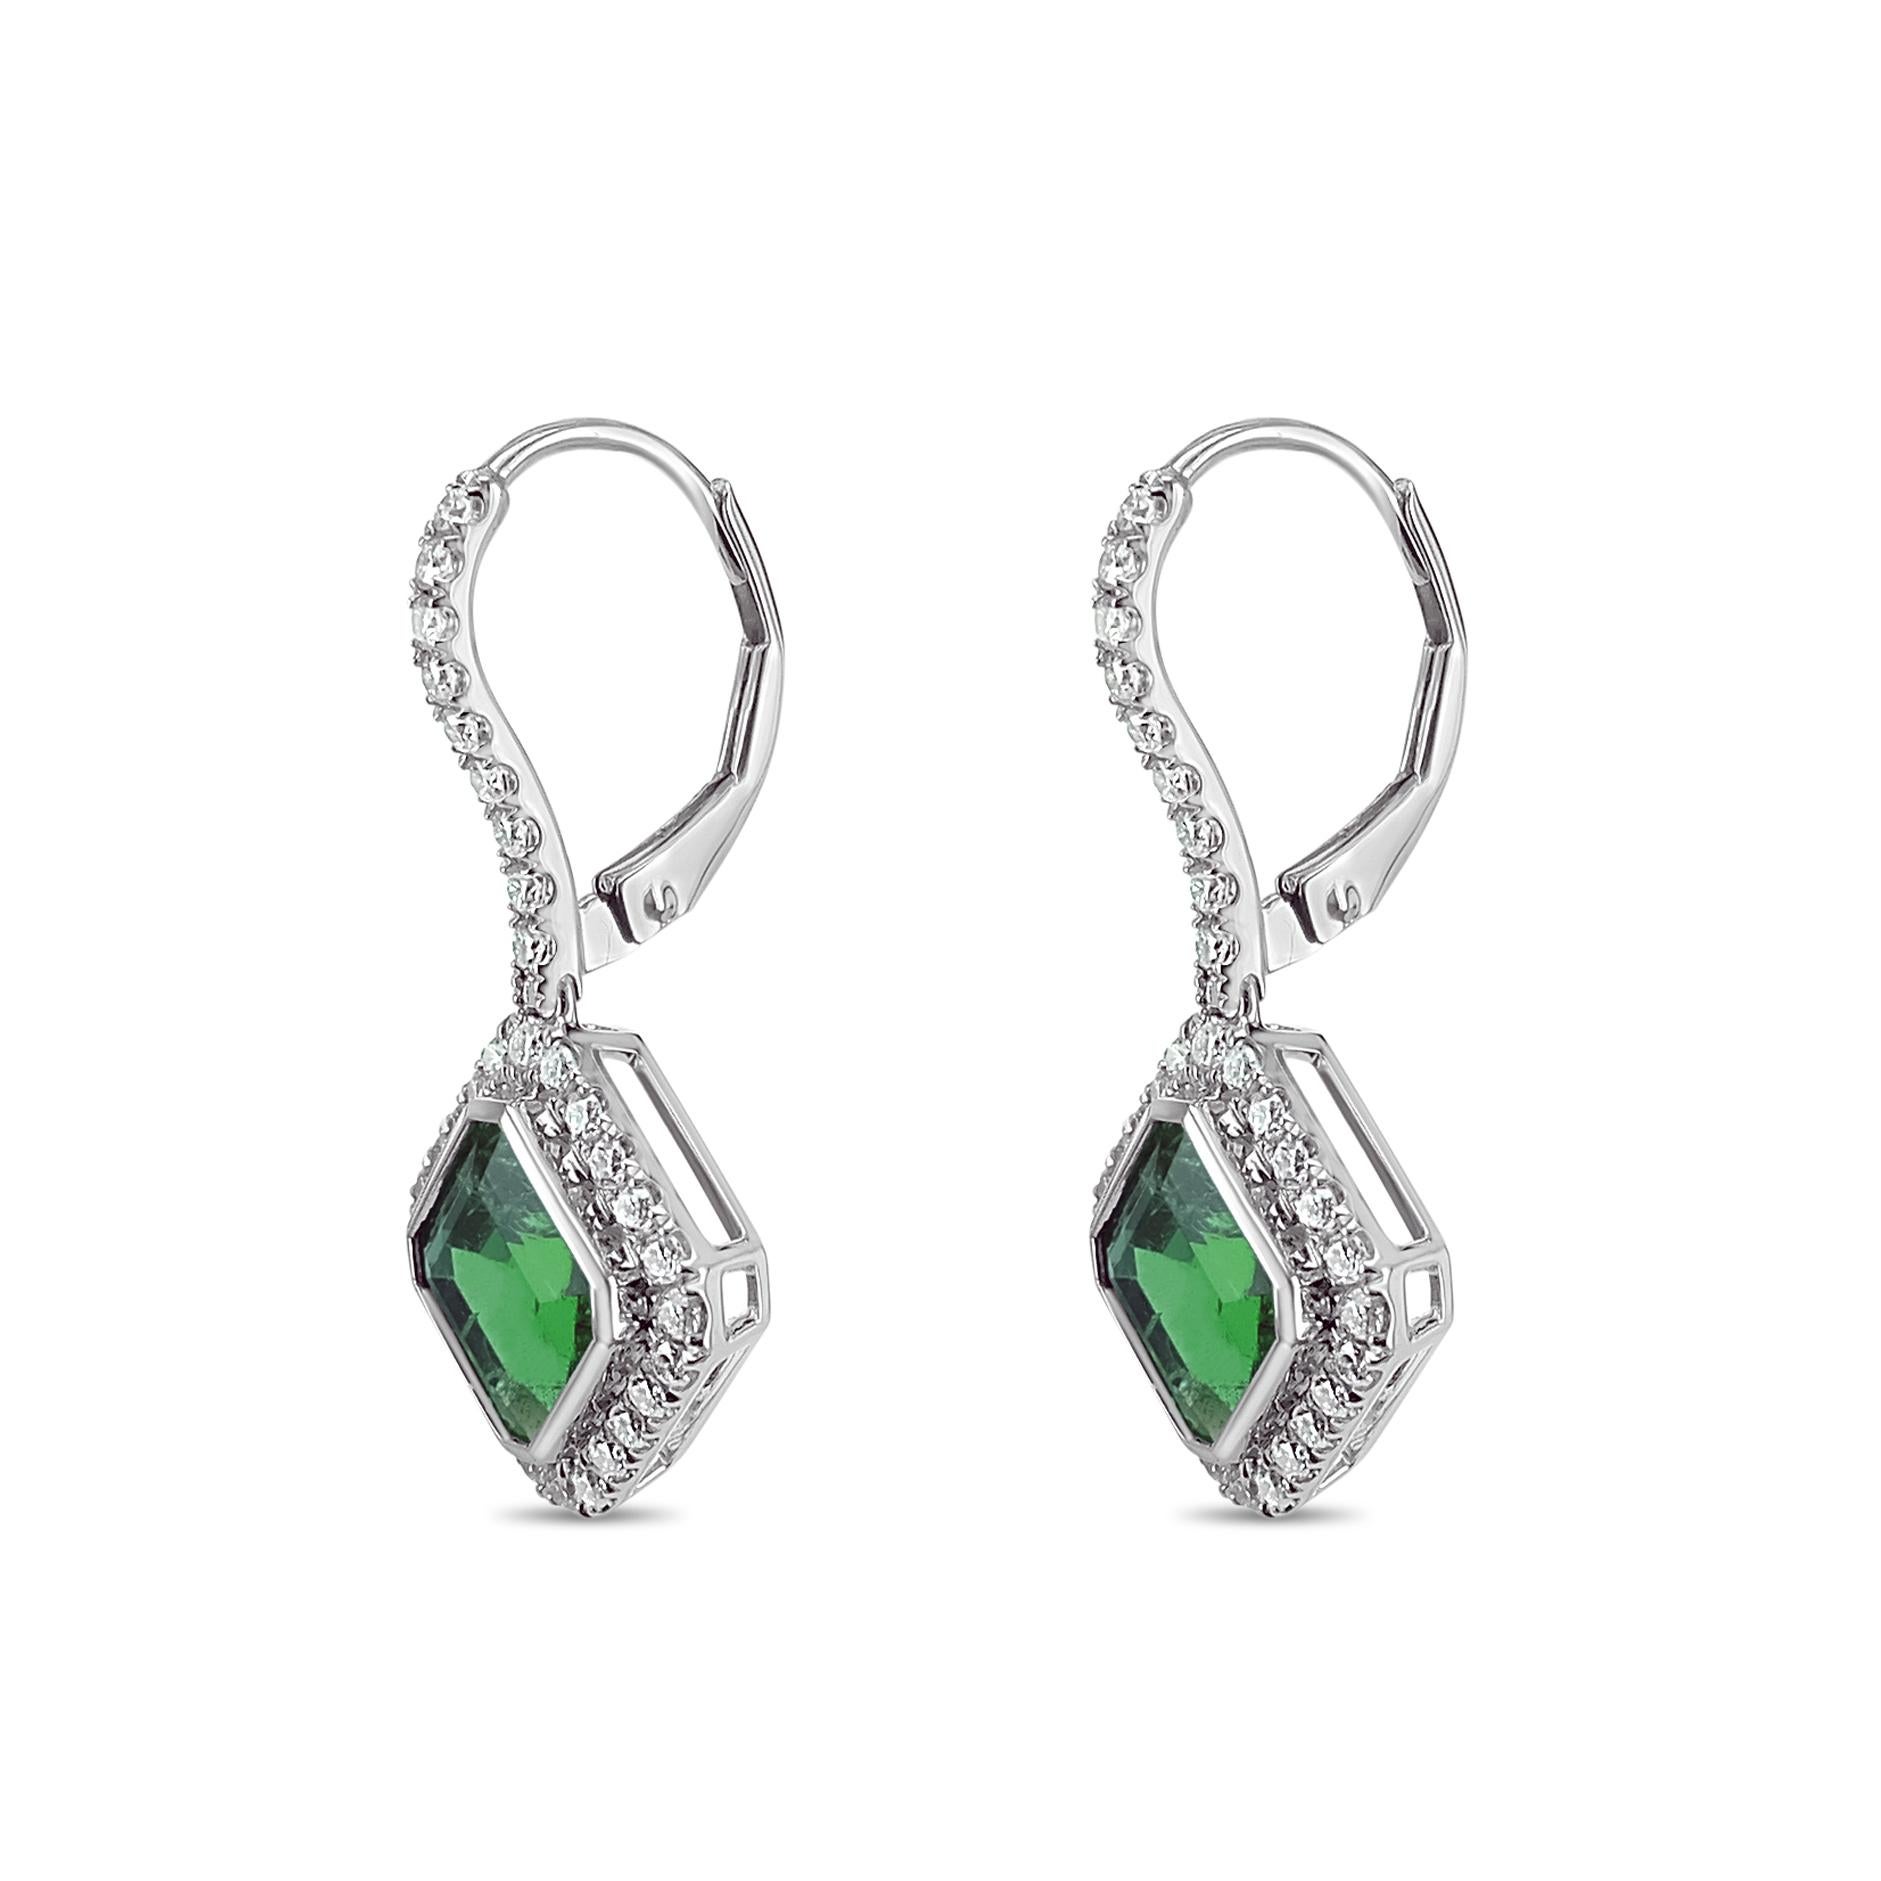 NGTC-zertifizierte 3,73 Karat grüne Smaragde aus Sambia sind mit 0,60 Karat weißen Brillanten besetzt. Die Smaragde sind in der Reinheit VS und sind selten in dieser Reinheit von sambischen Minen zu finden.
Die Einzelheiten des Diamanten sind